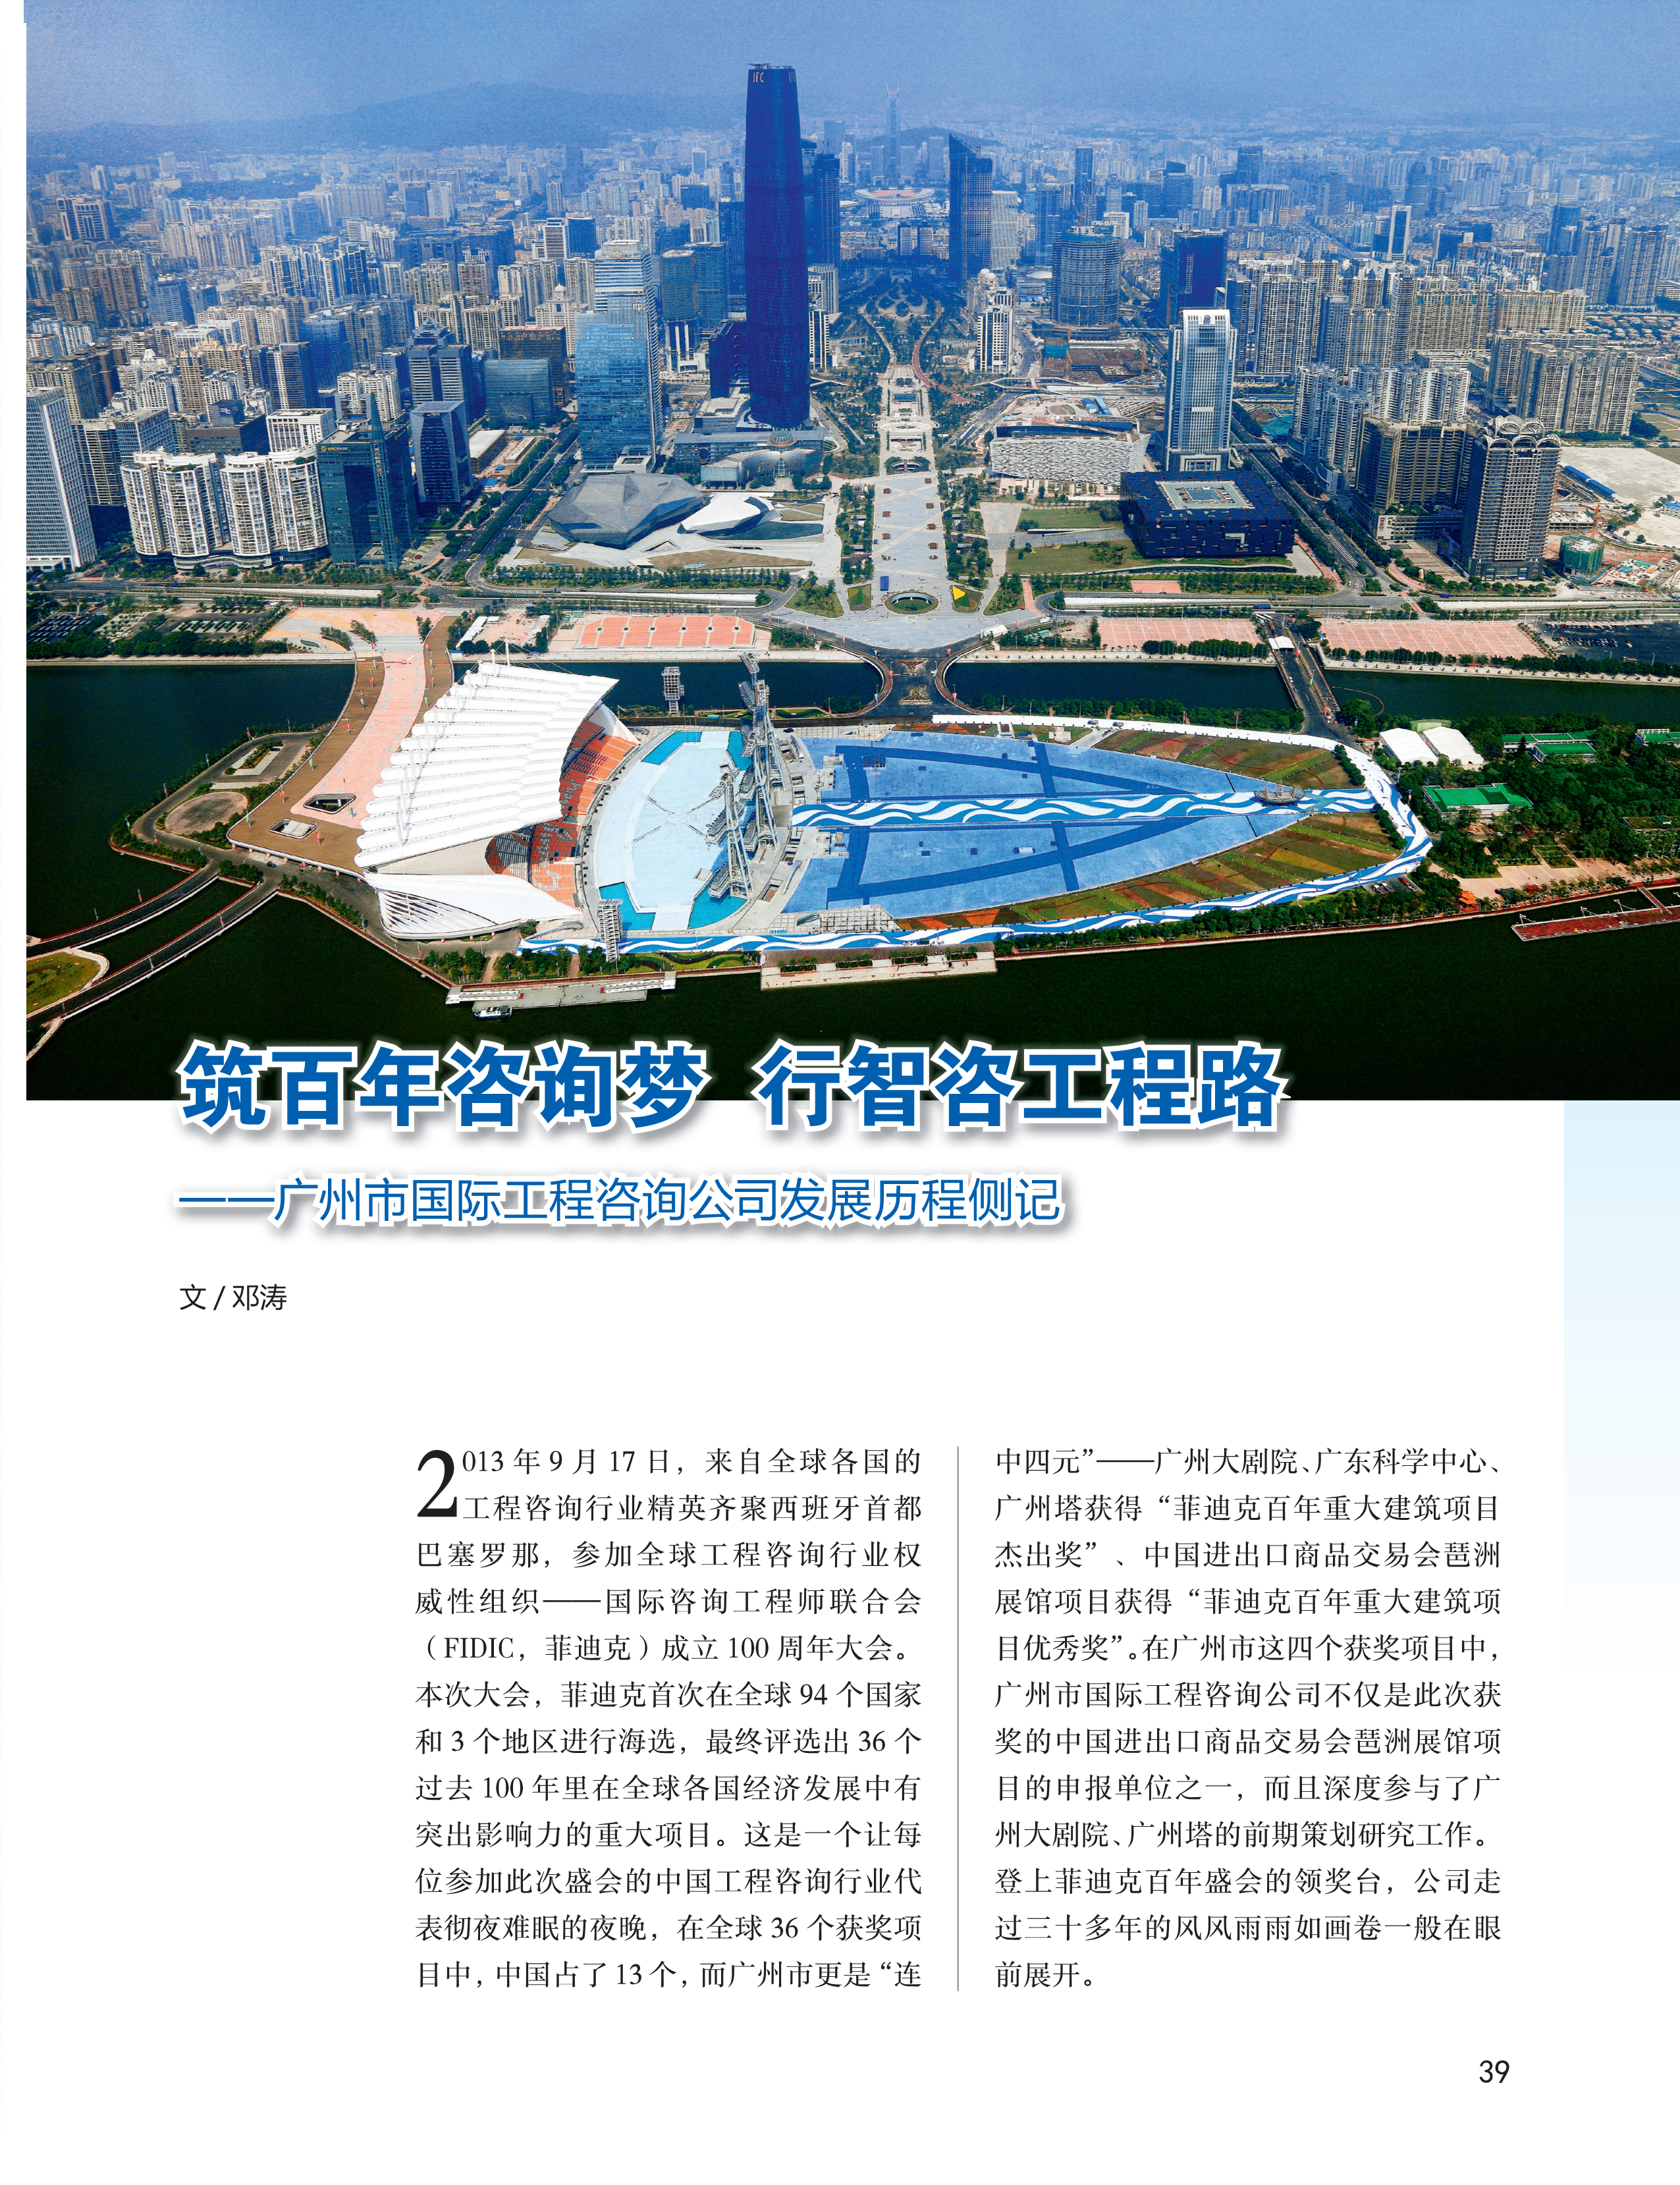 中国工程咨询2019广东专刊_39-1